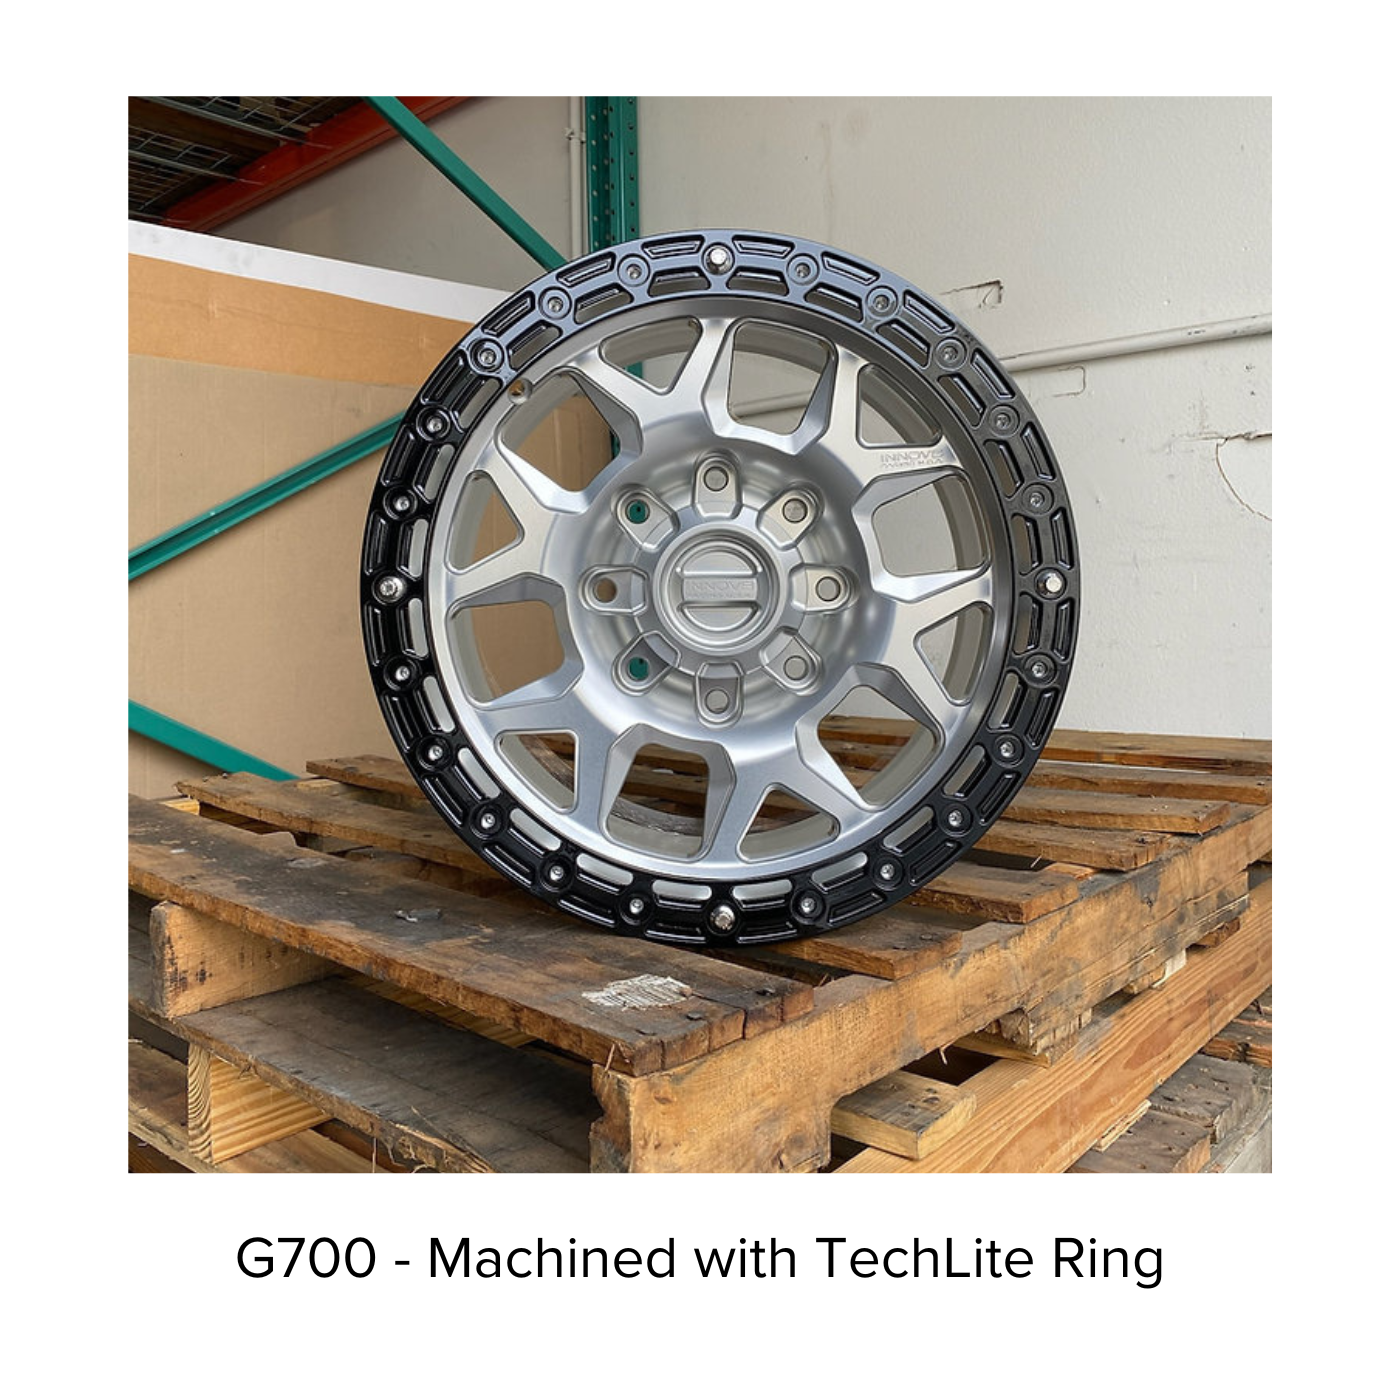 G700 Simulated Beadlock Wheel 20x9.0" 8 Lug - TechLite Ring display